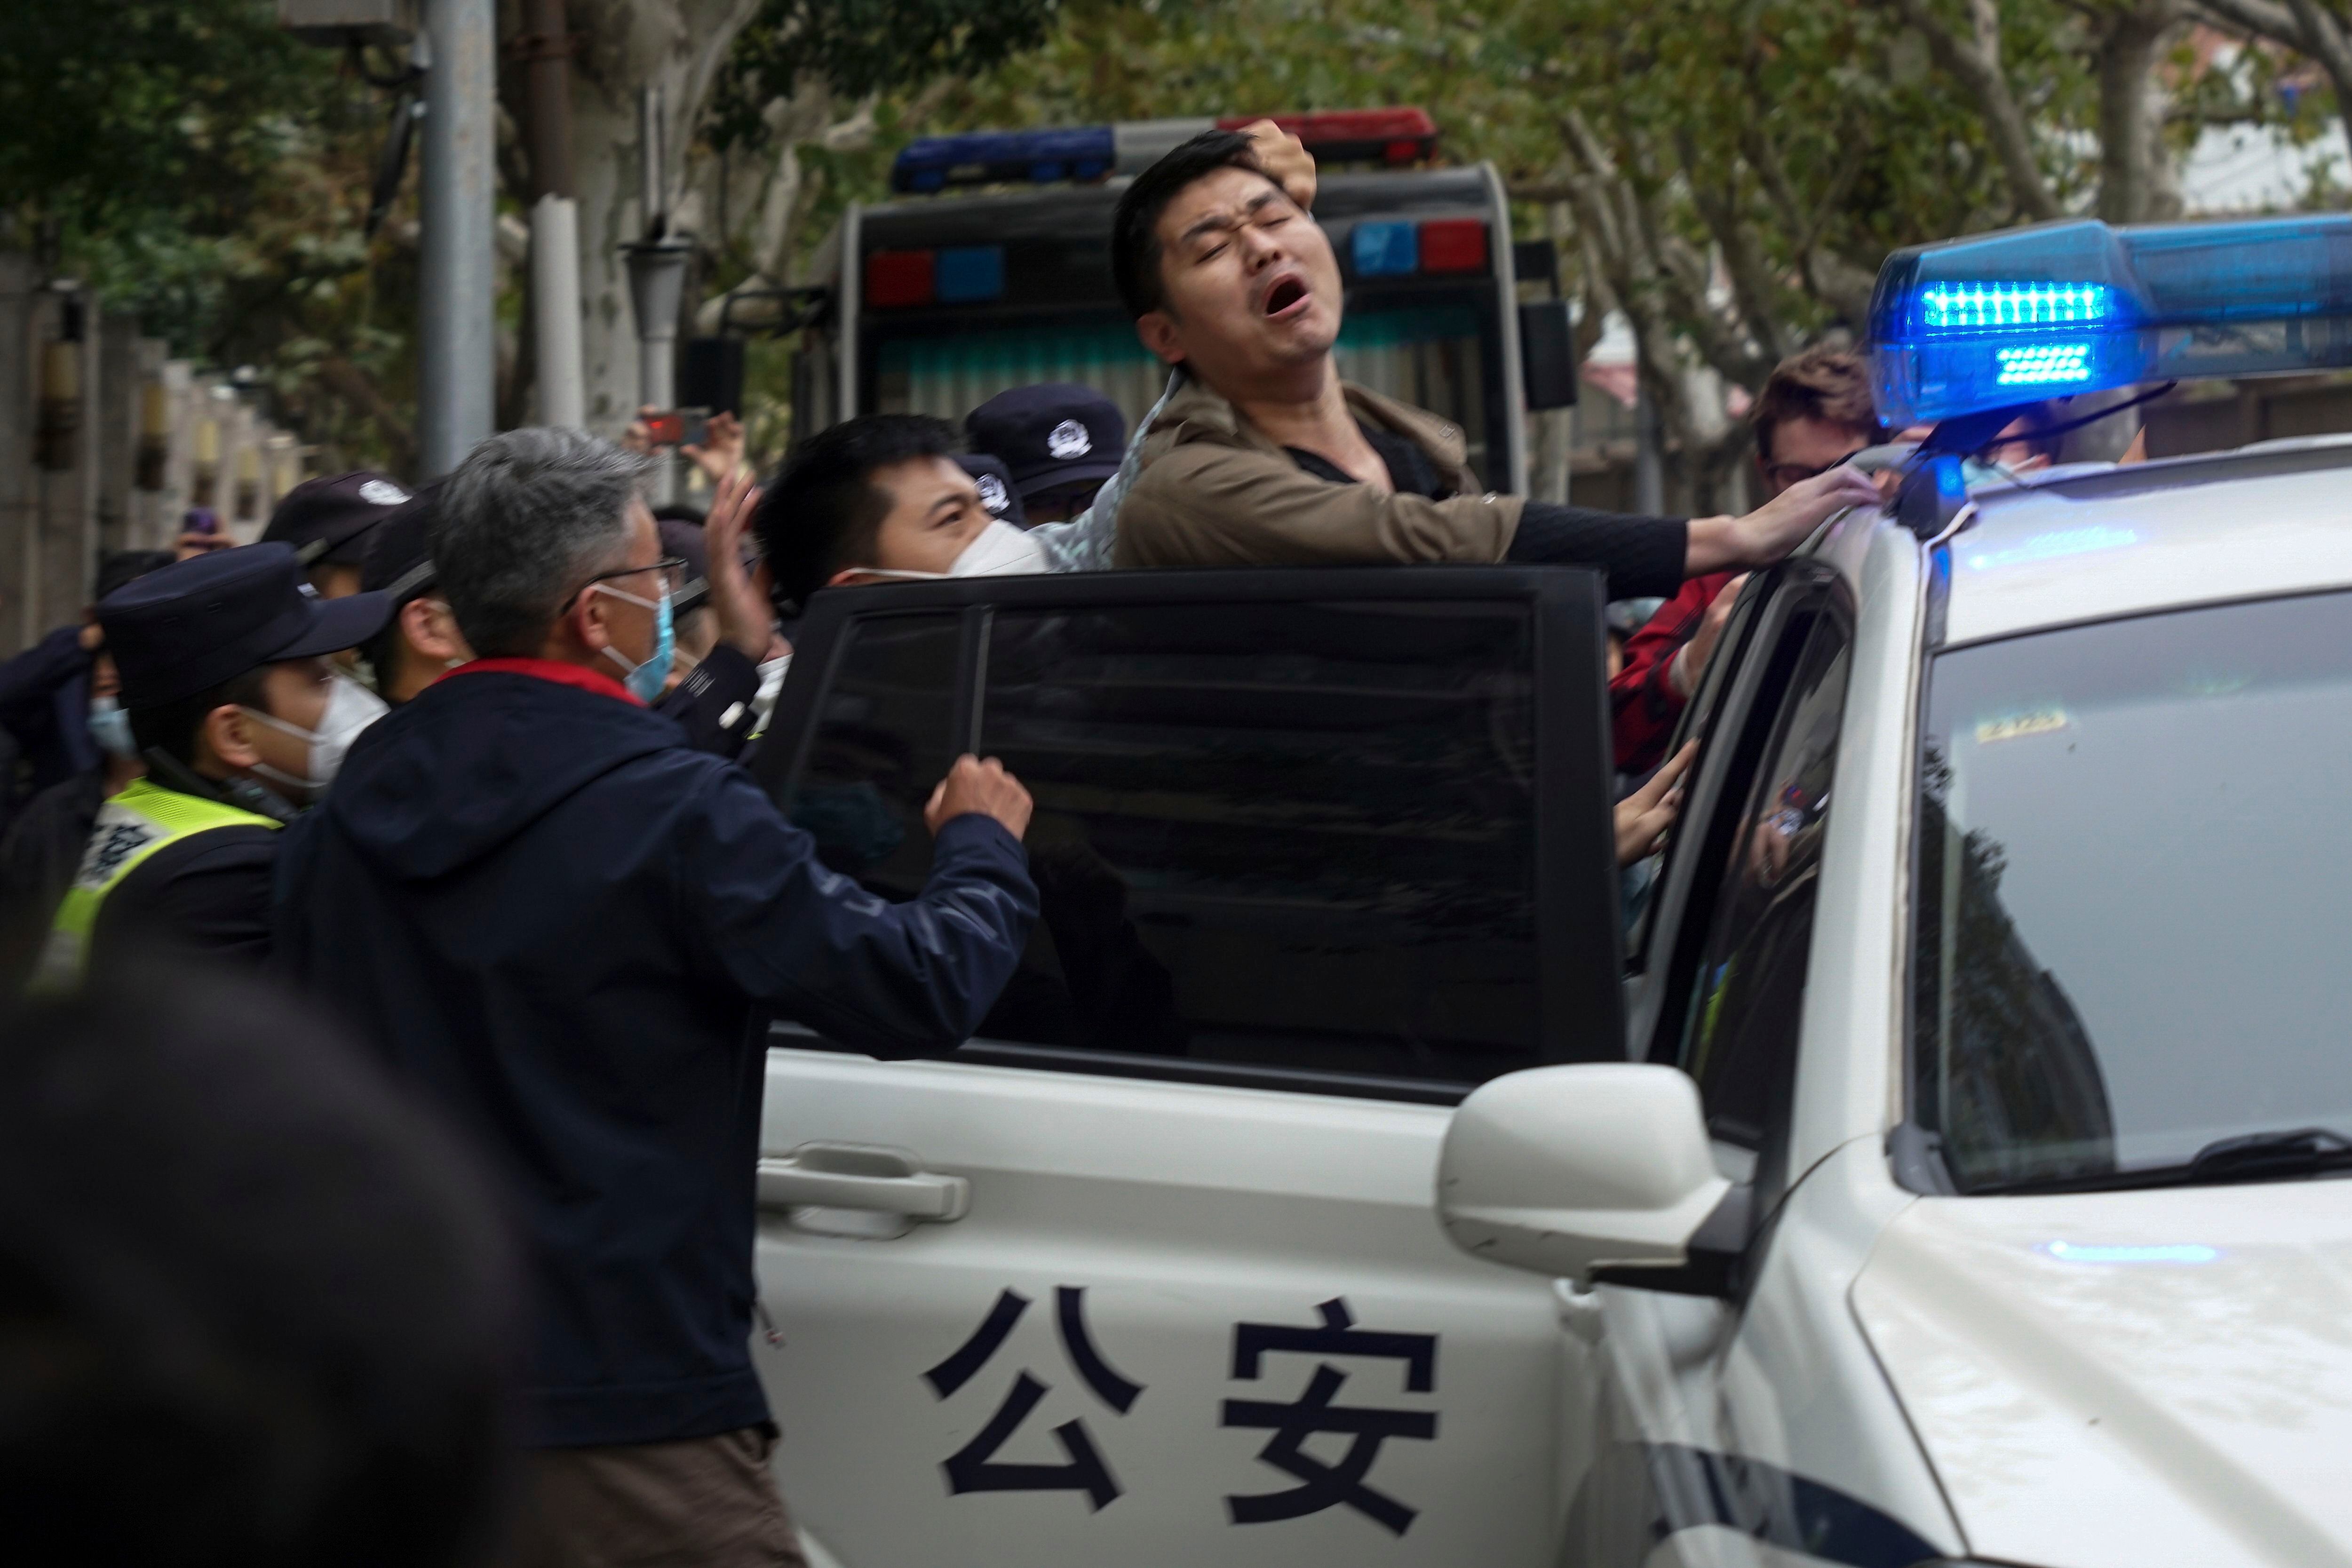 Otras organizaciones como Chinese Human Rights Defenders (CHRD) denunciaron la detención de más de 20 personas que participaron el pasado 27 de noviembre en las protestas en Beijing bajo la acusación de “provocar disputas y problemas”. (AP)